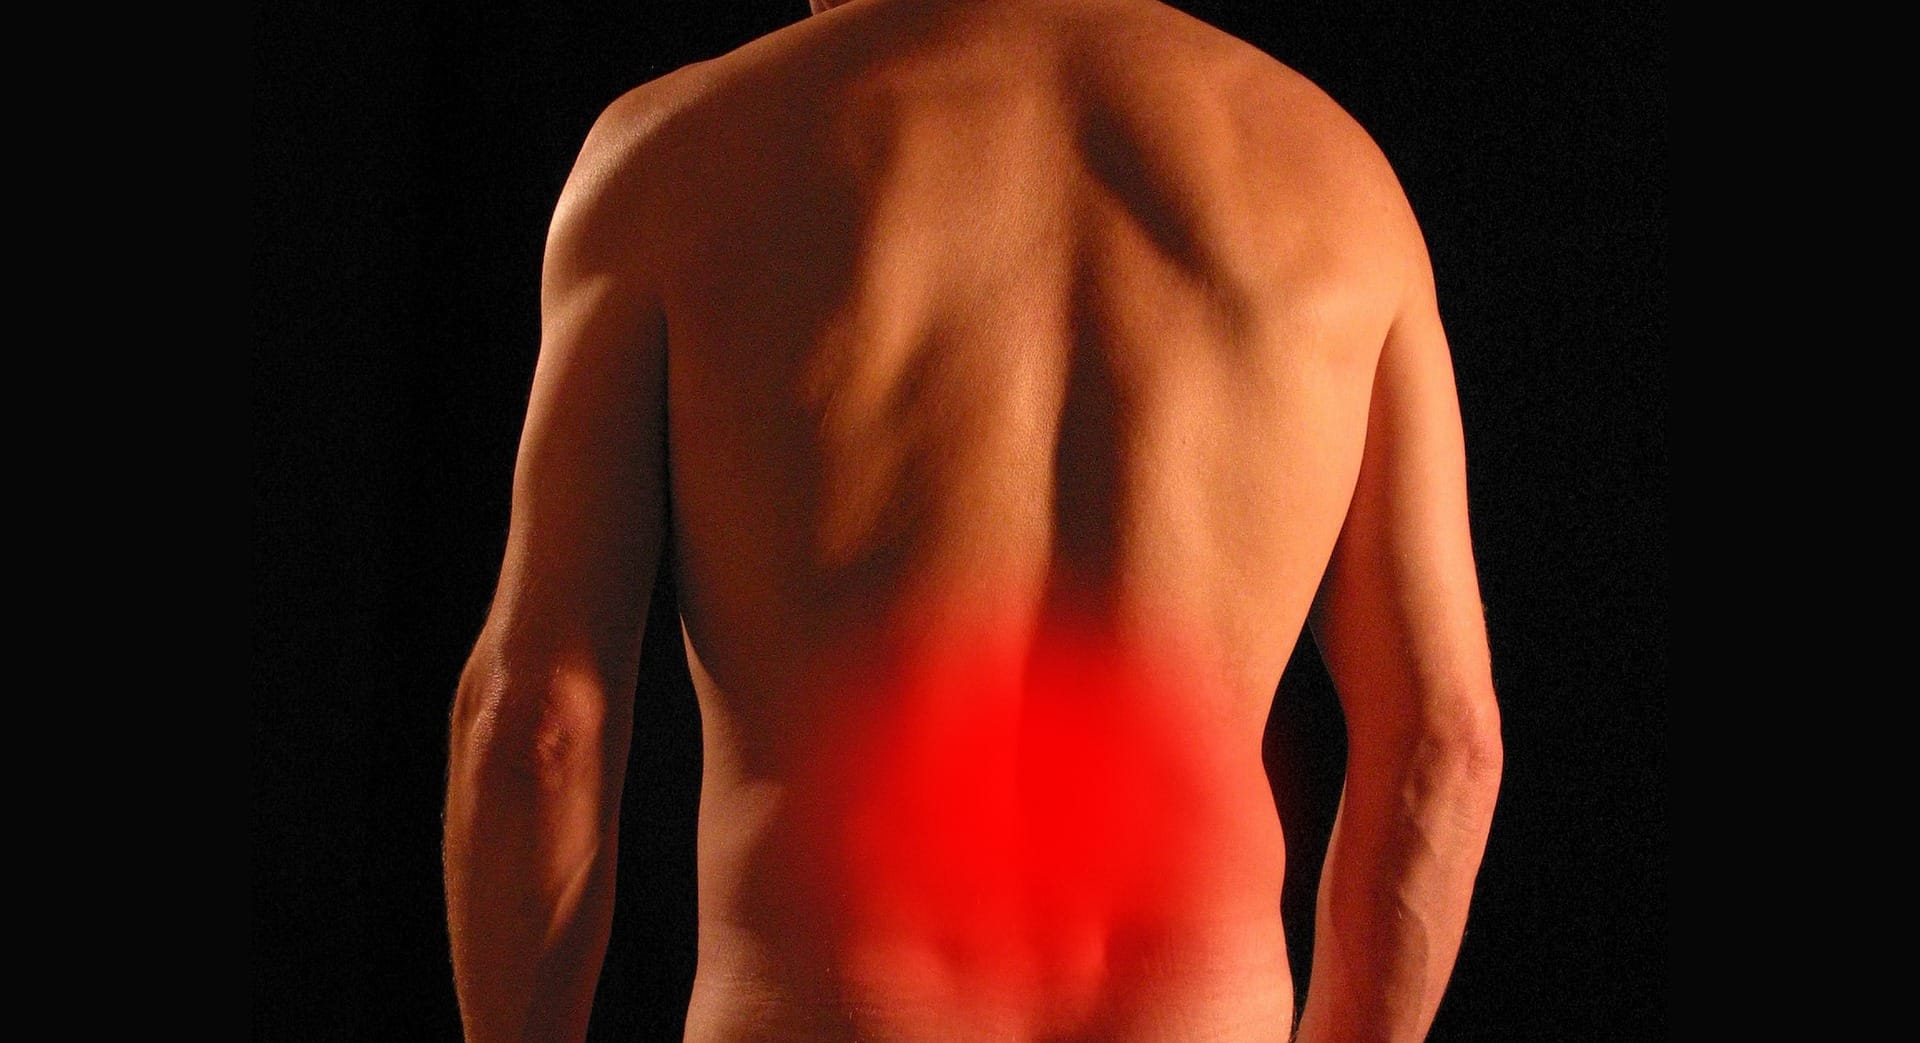 back pain treatment melbourne